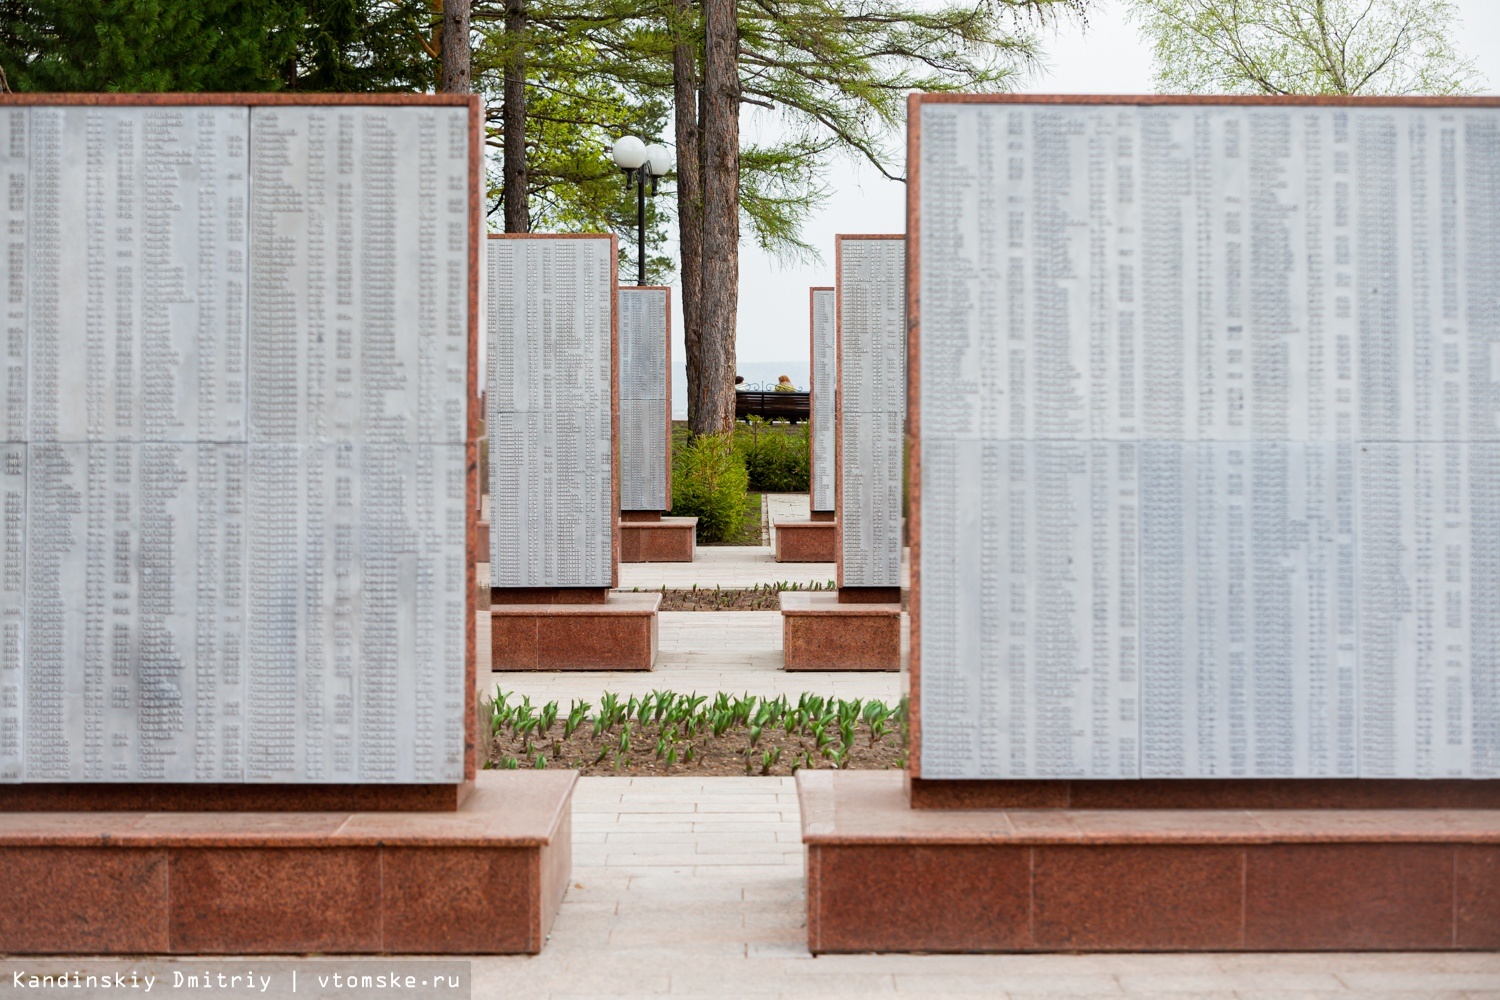 Стена памяти в парке патриот фото ветеранов